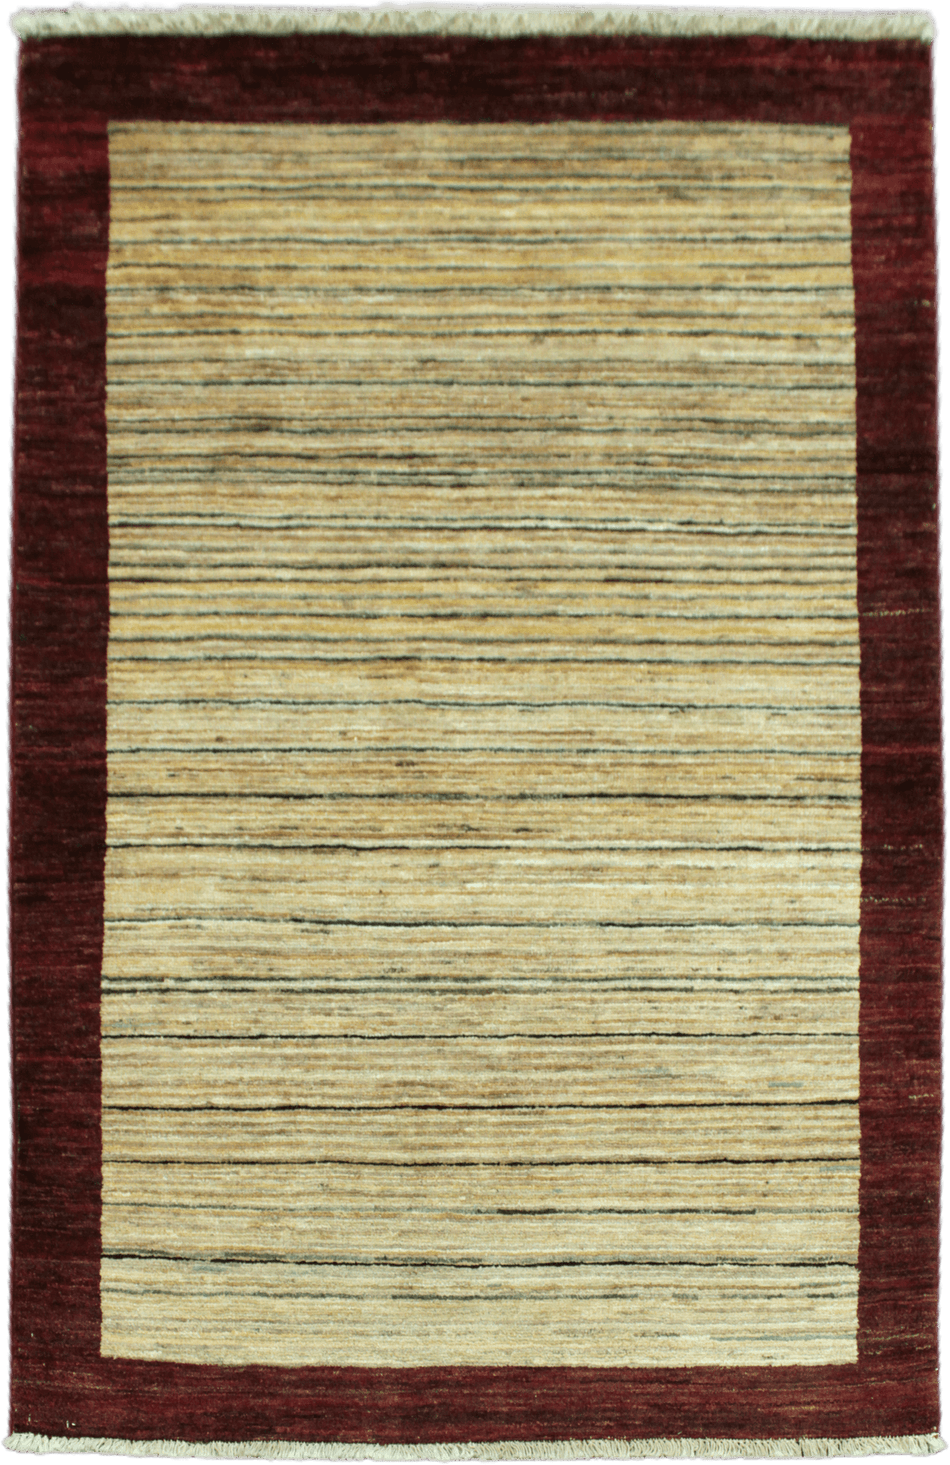 Striped Gabbeh Rug - 145 cm x 94 cm